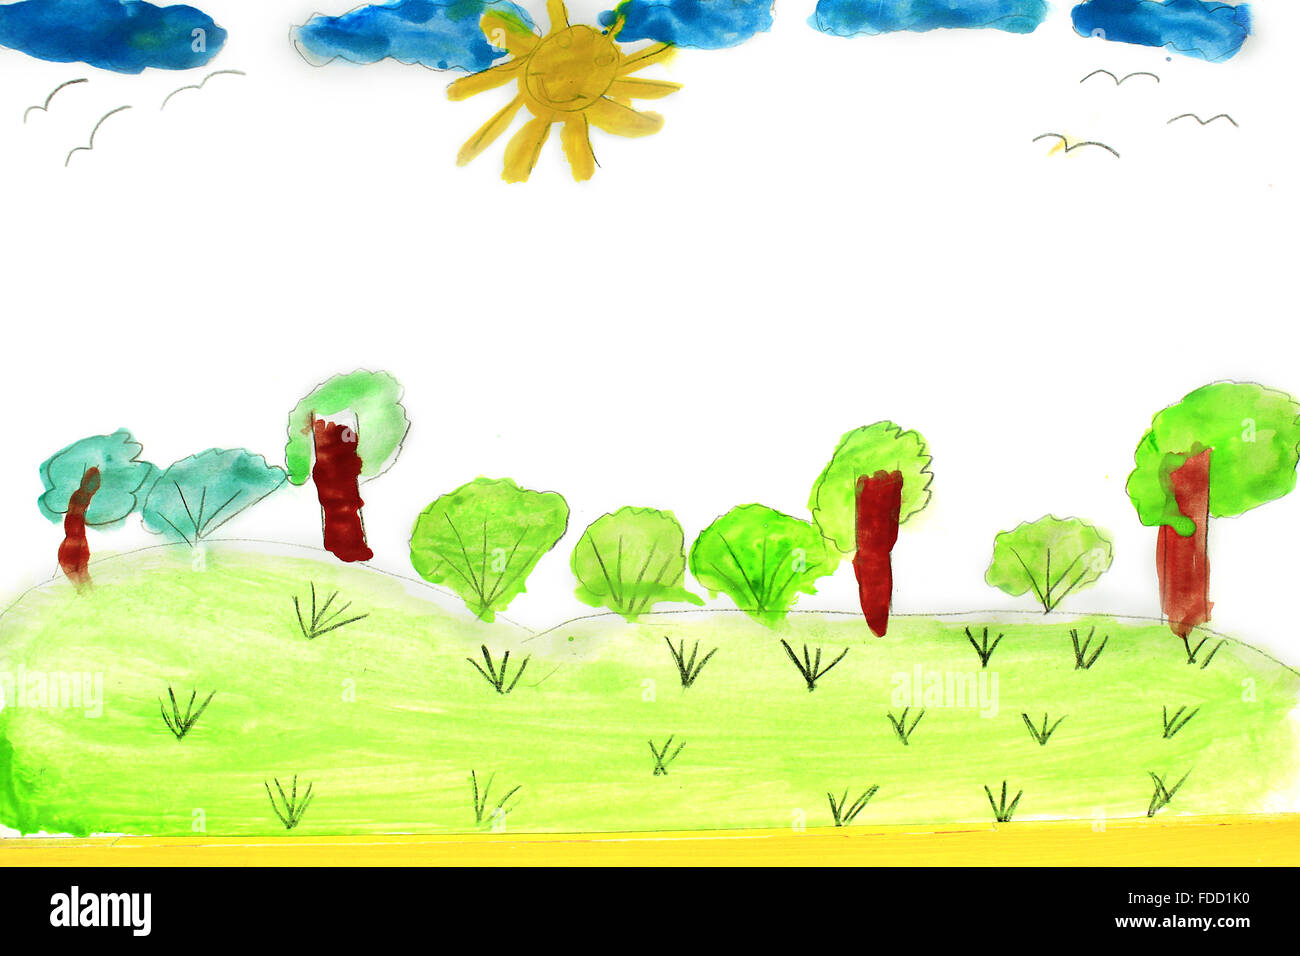 Freude kindliche Zeichnung des Sommers mit Bäumen und bush Stockfoto